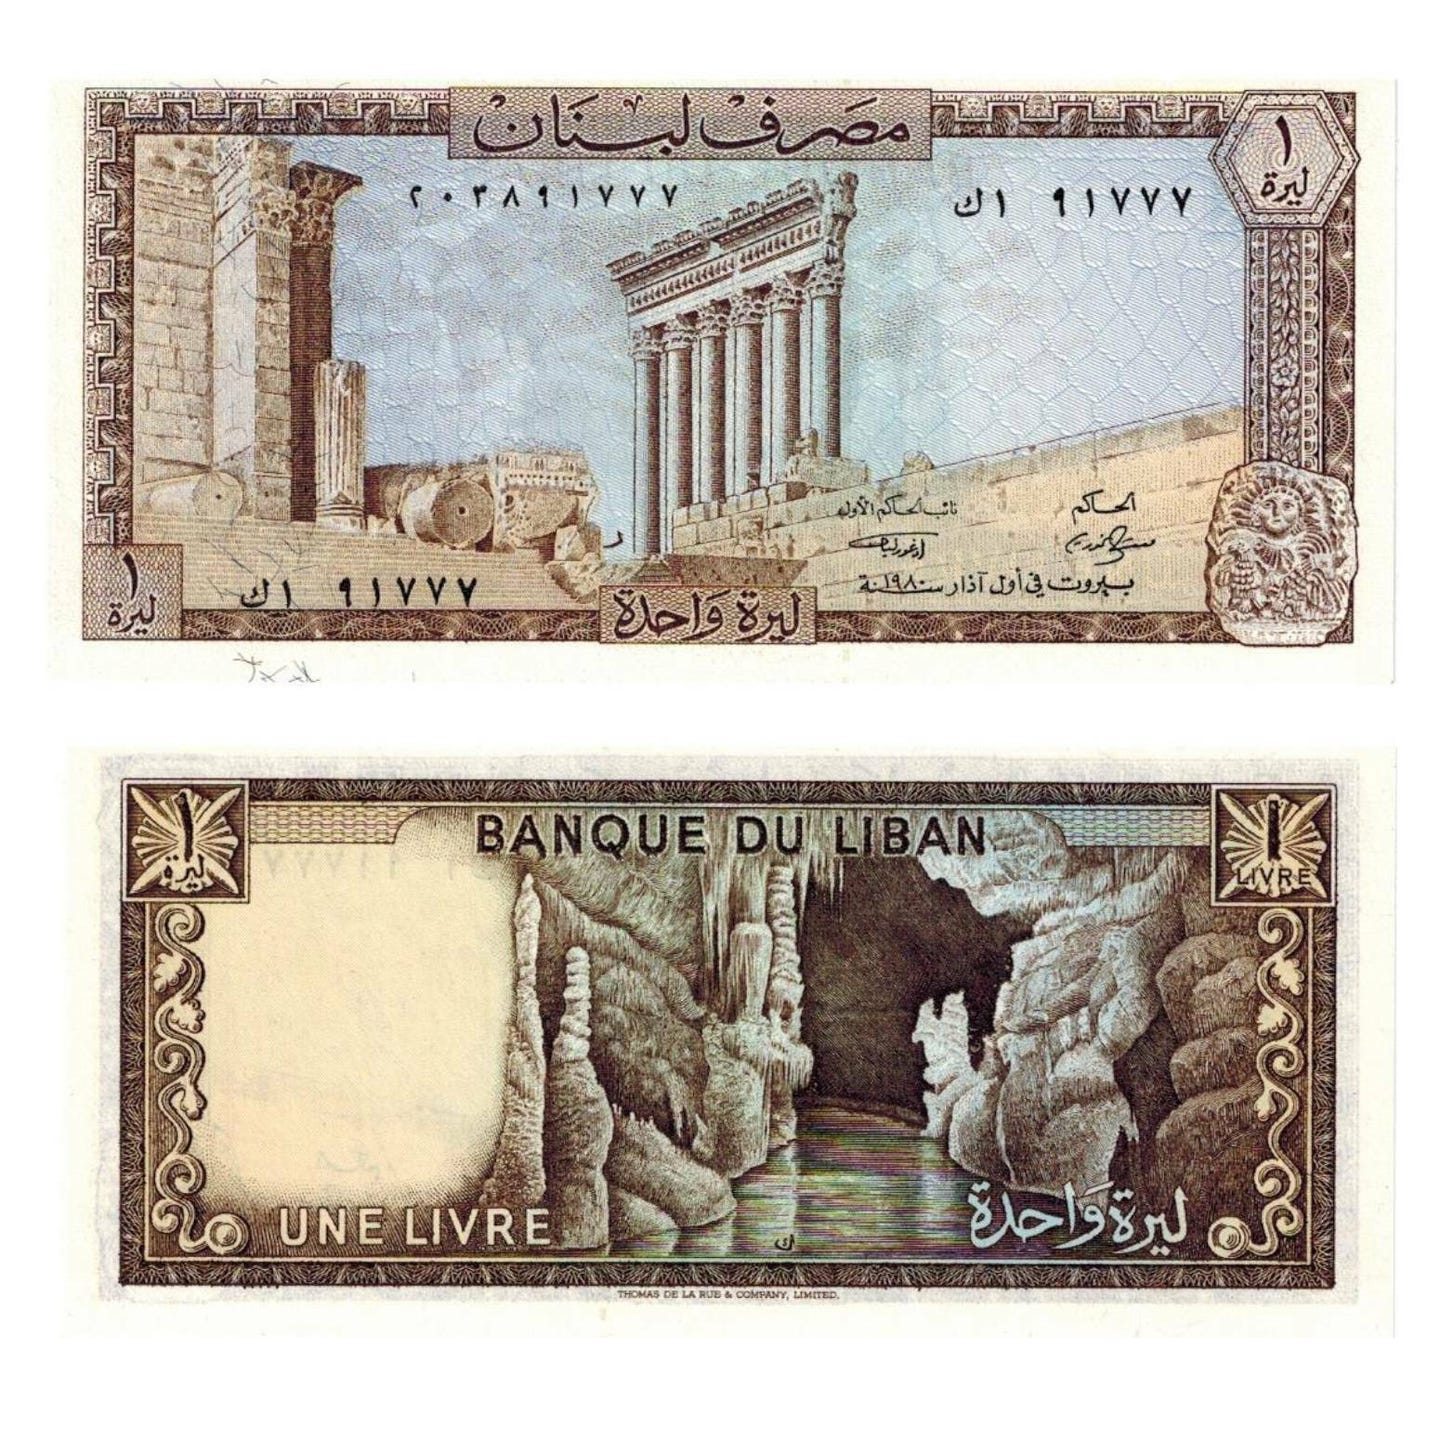 LIBANON 7 BANKNOTEN SET (1980 - 1988) 1 - 250 LIVRES UNZ - Le Grand Mint